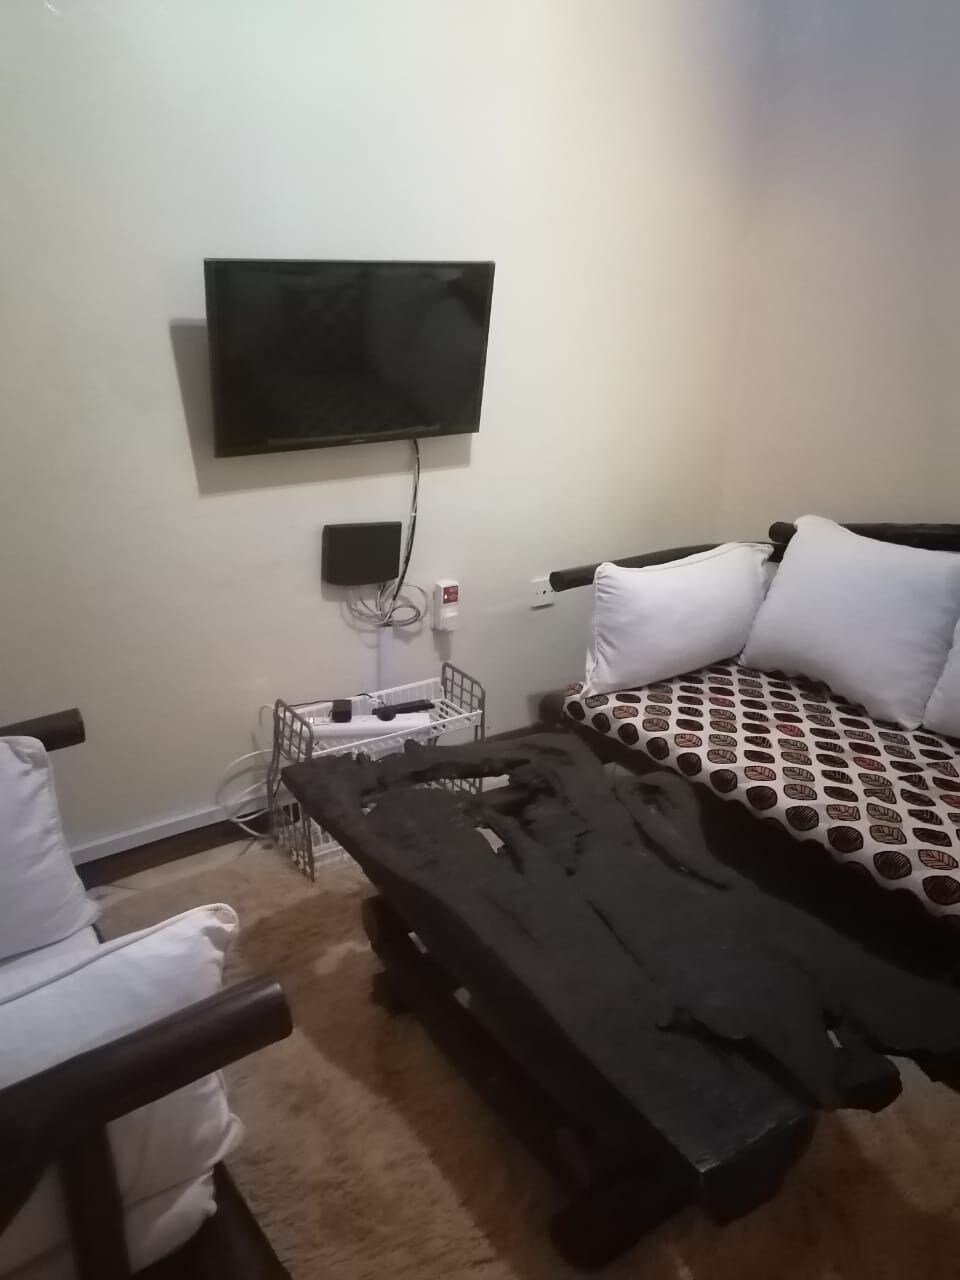 位于内罗毕肯尼亚的酒店式单间公寓。很酷的地方。